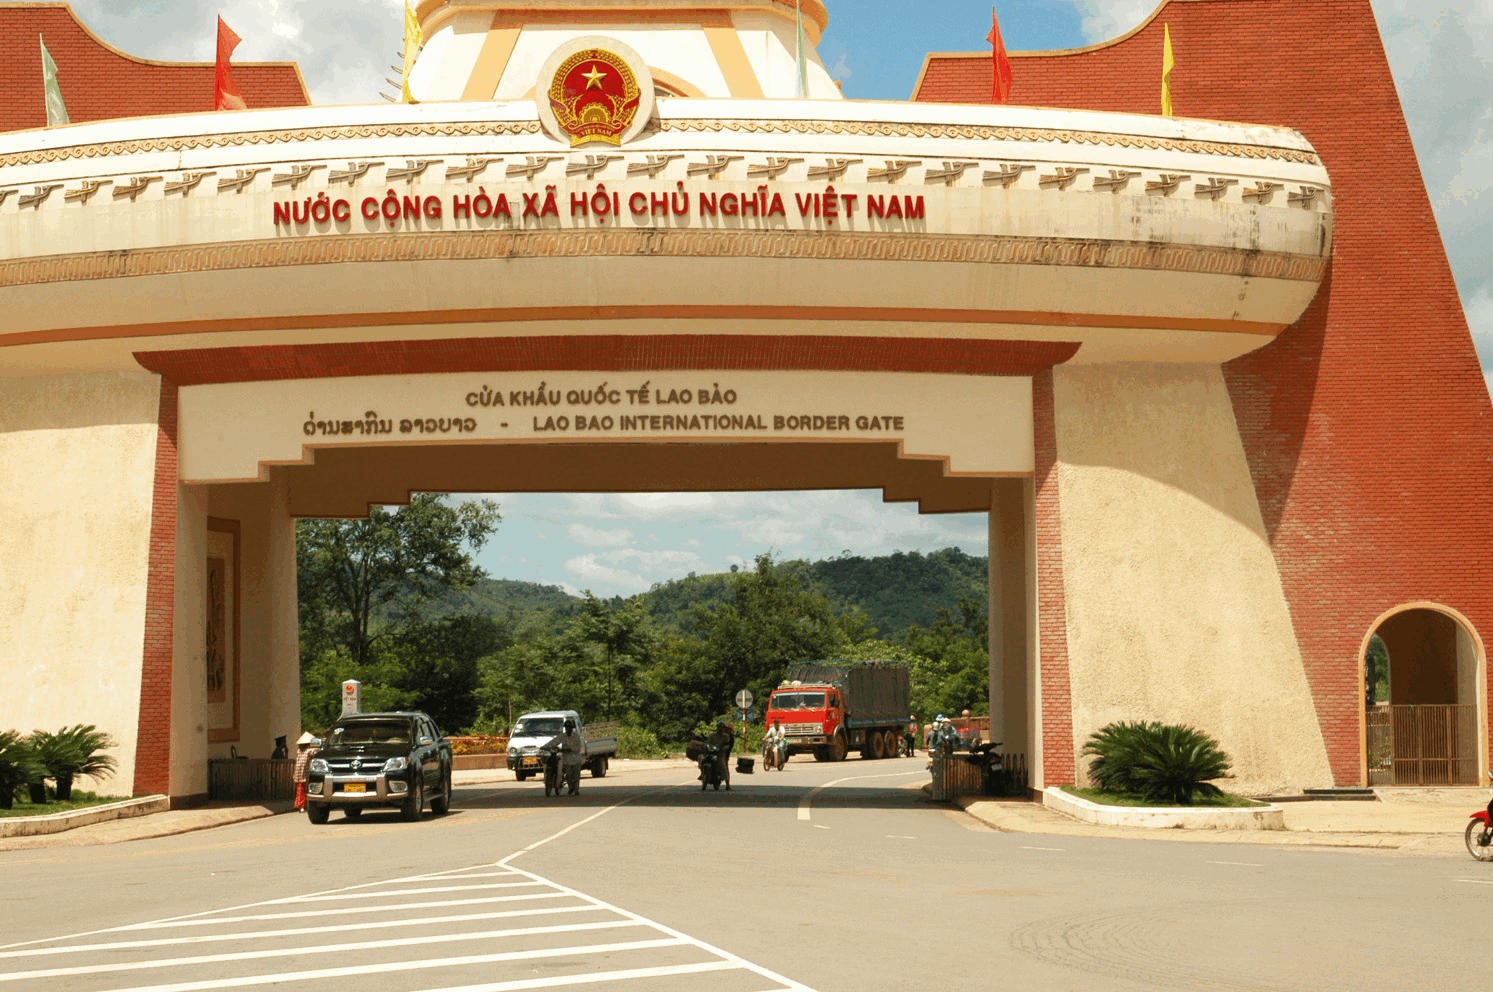 Của khẩu Quốc tế Lao Bảo có vị trí địa lý, cơ sở hạ tầng tốt nhất tại Quảng Trị